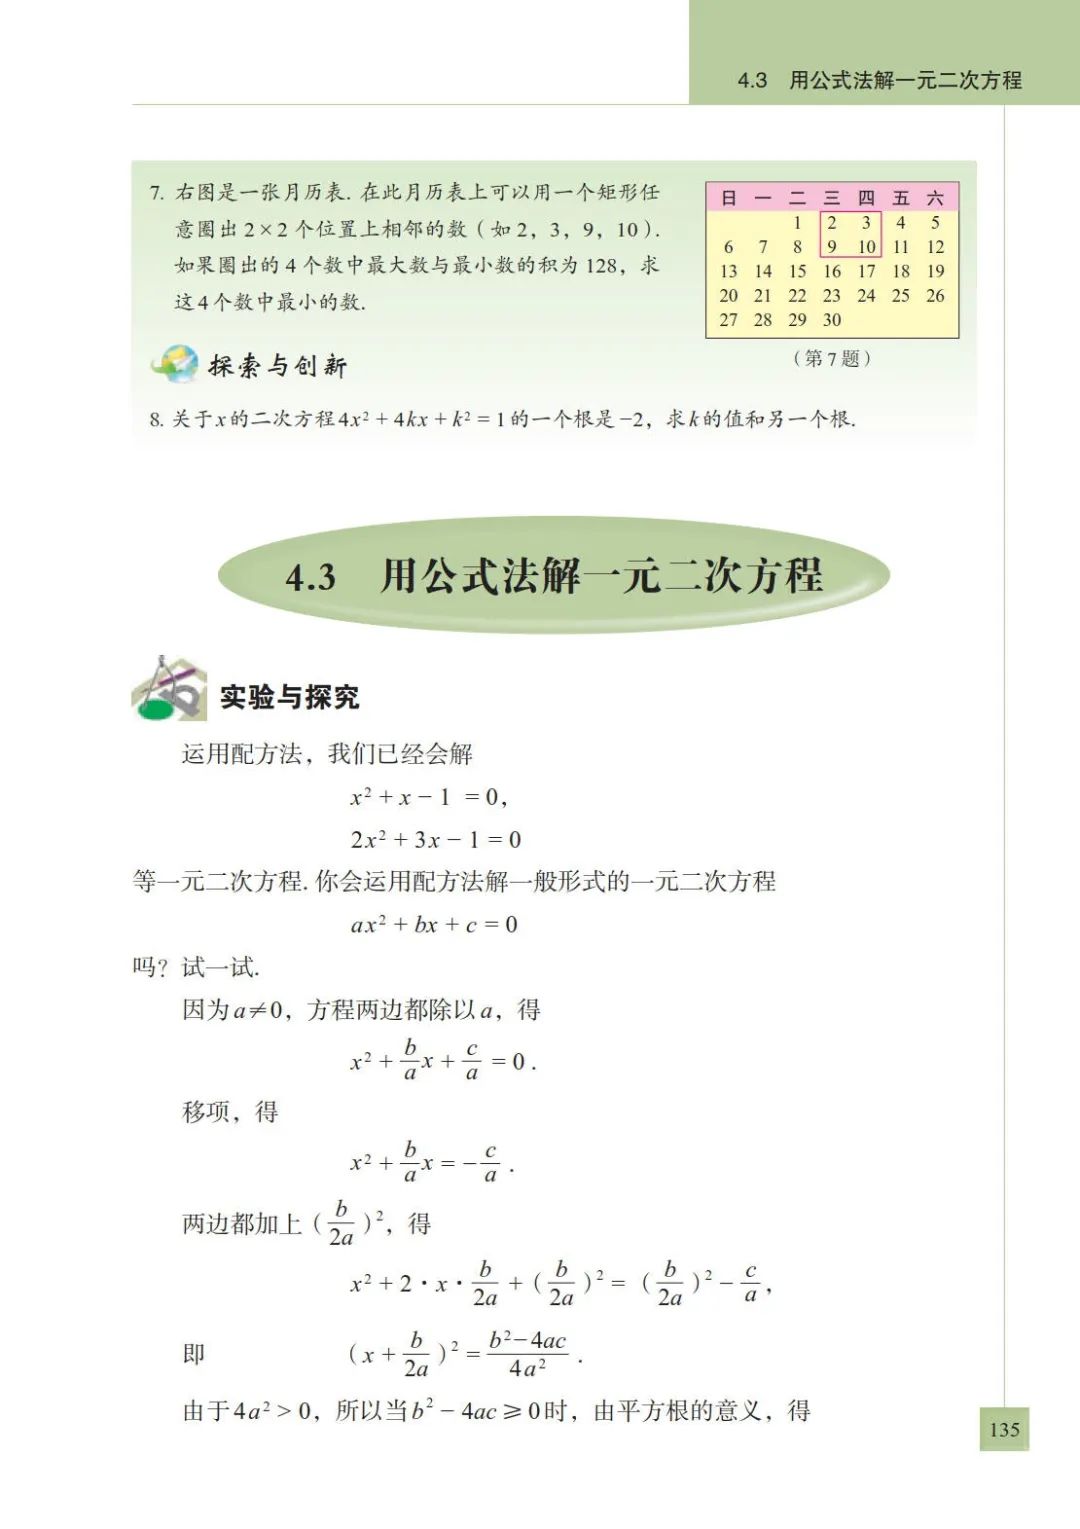 4 3 用公式法解一元二次方程 Page135 青岛版九年级数学上册电子课本 教材 教科书 好多电子课本网